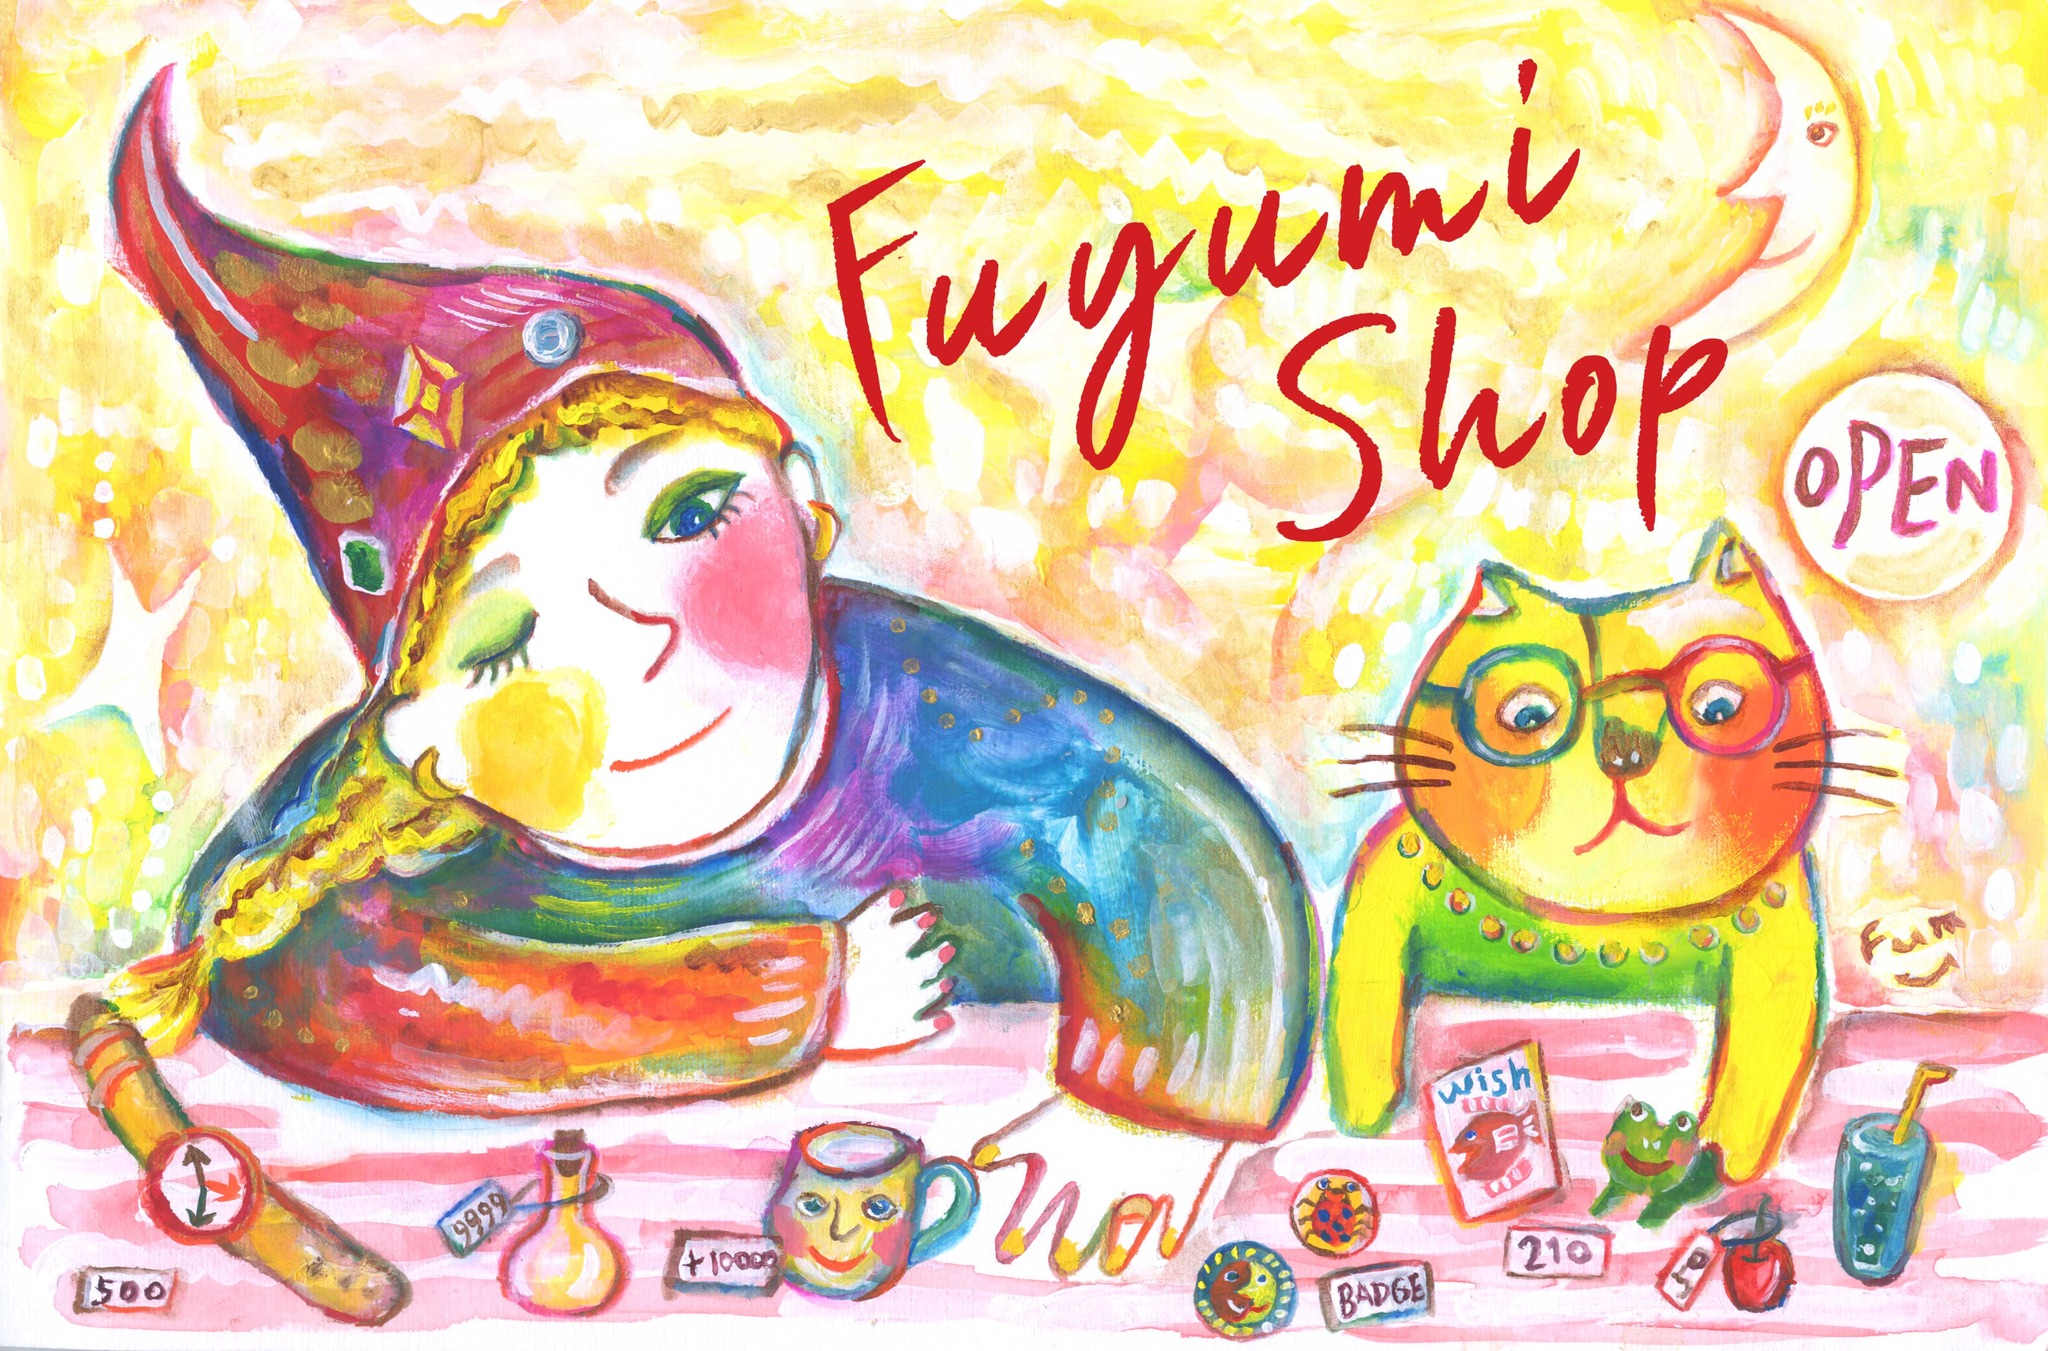 Fuyumi shop